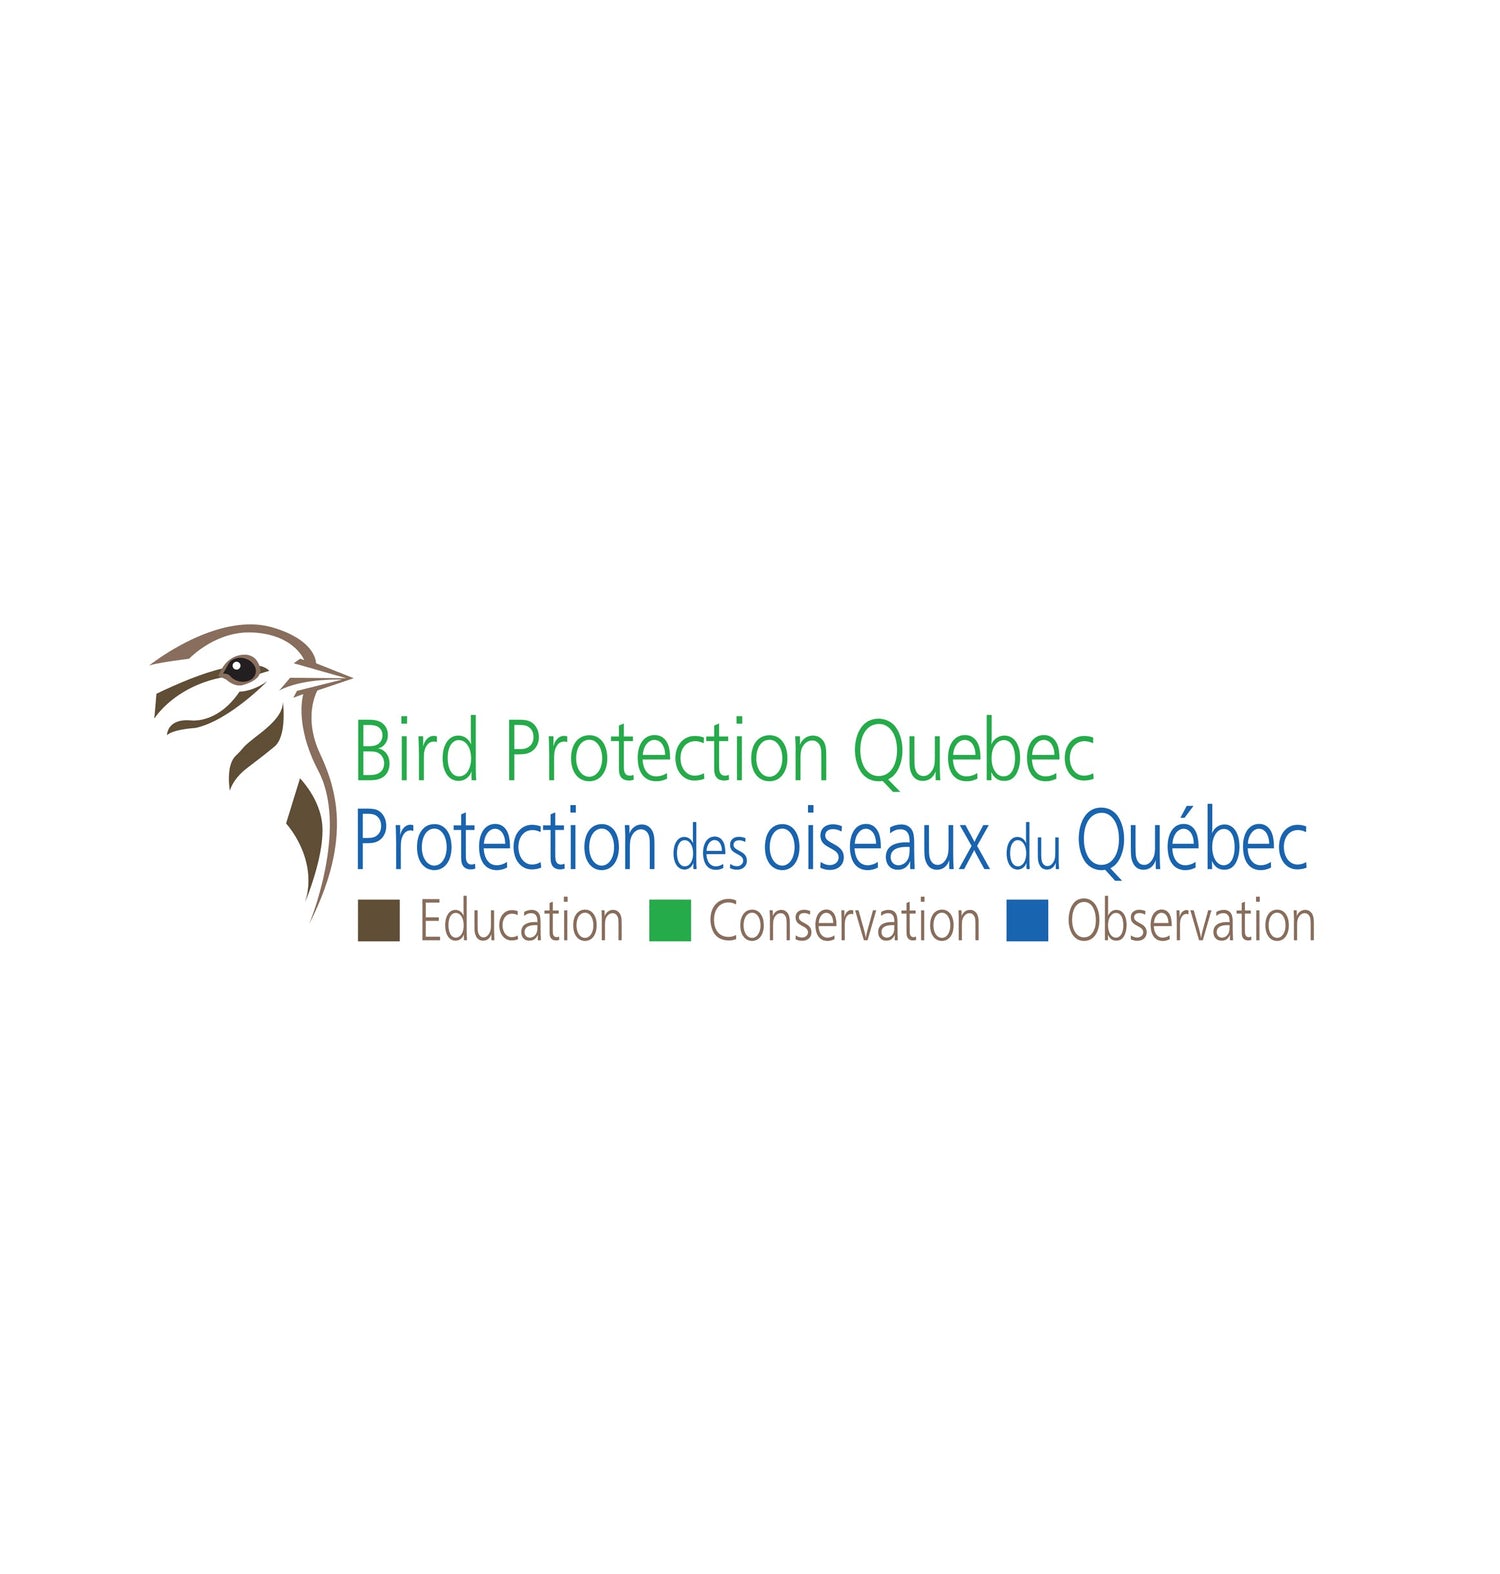 Bird Protectin Quebec logo